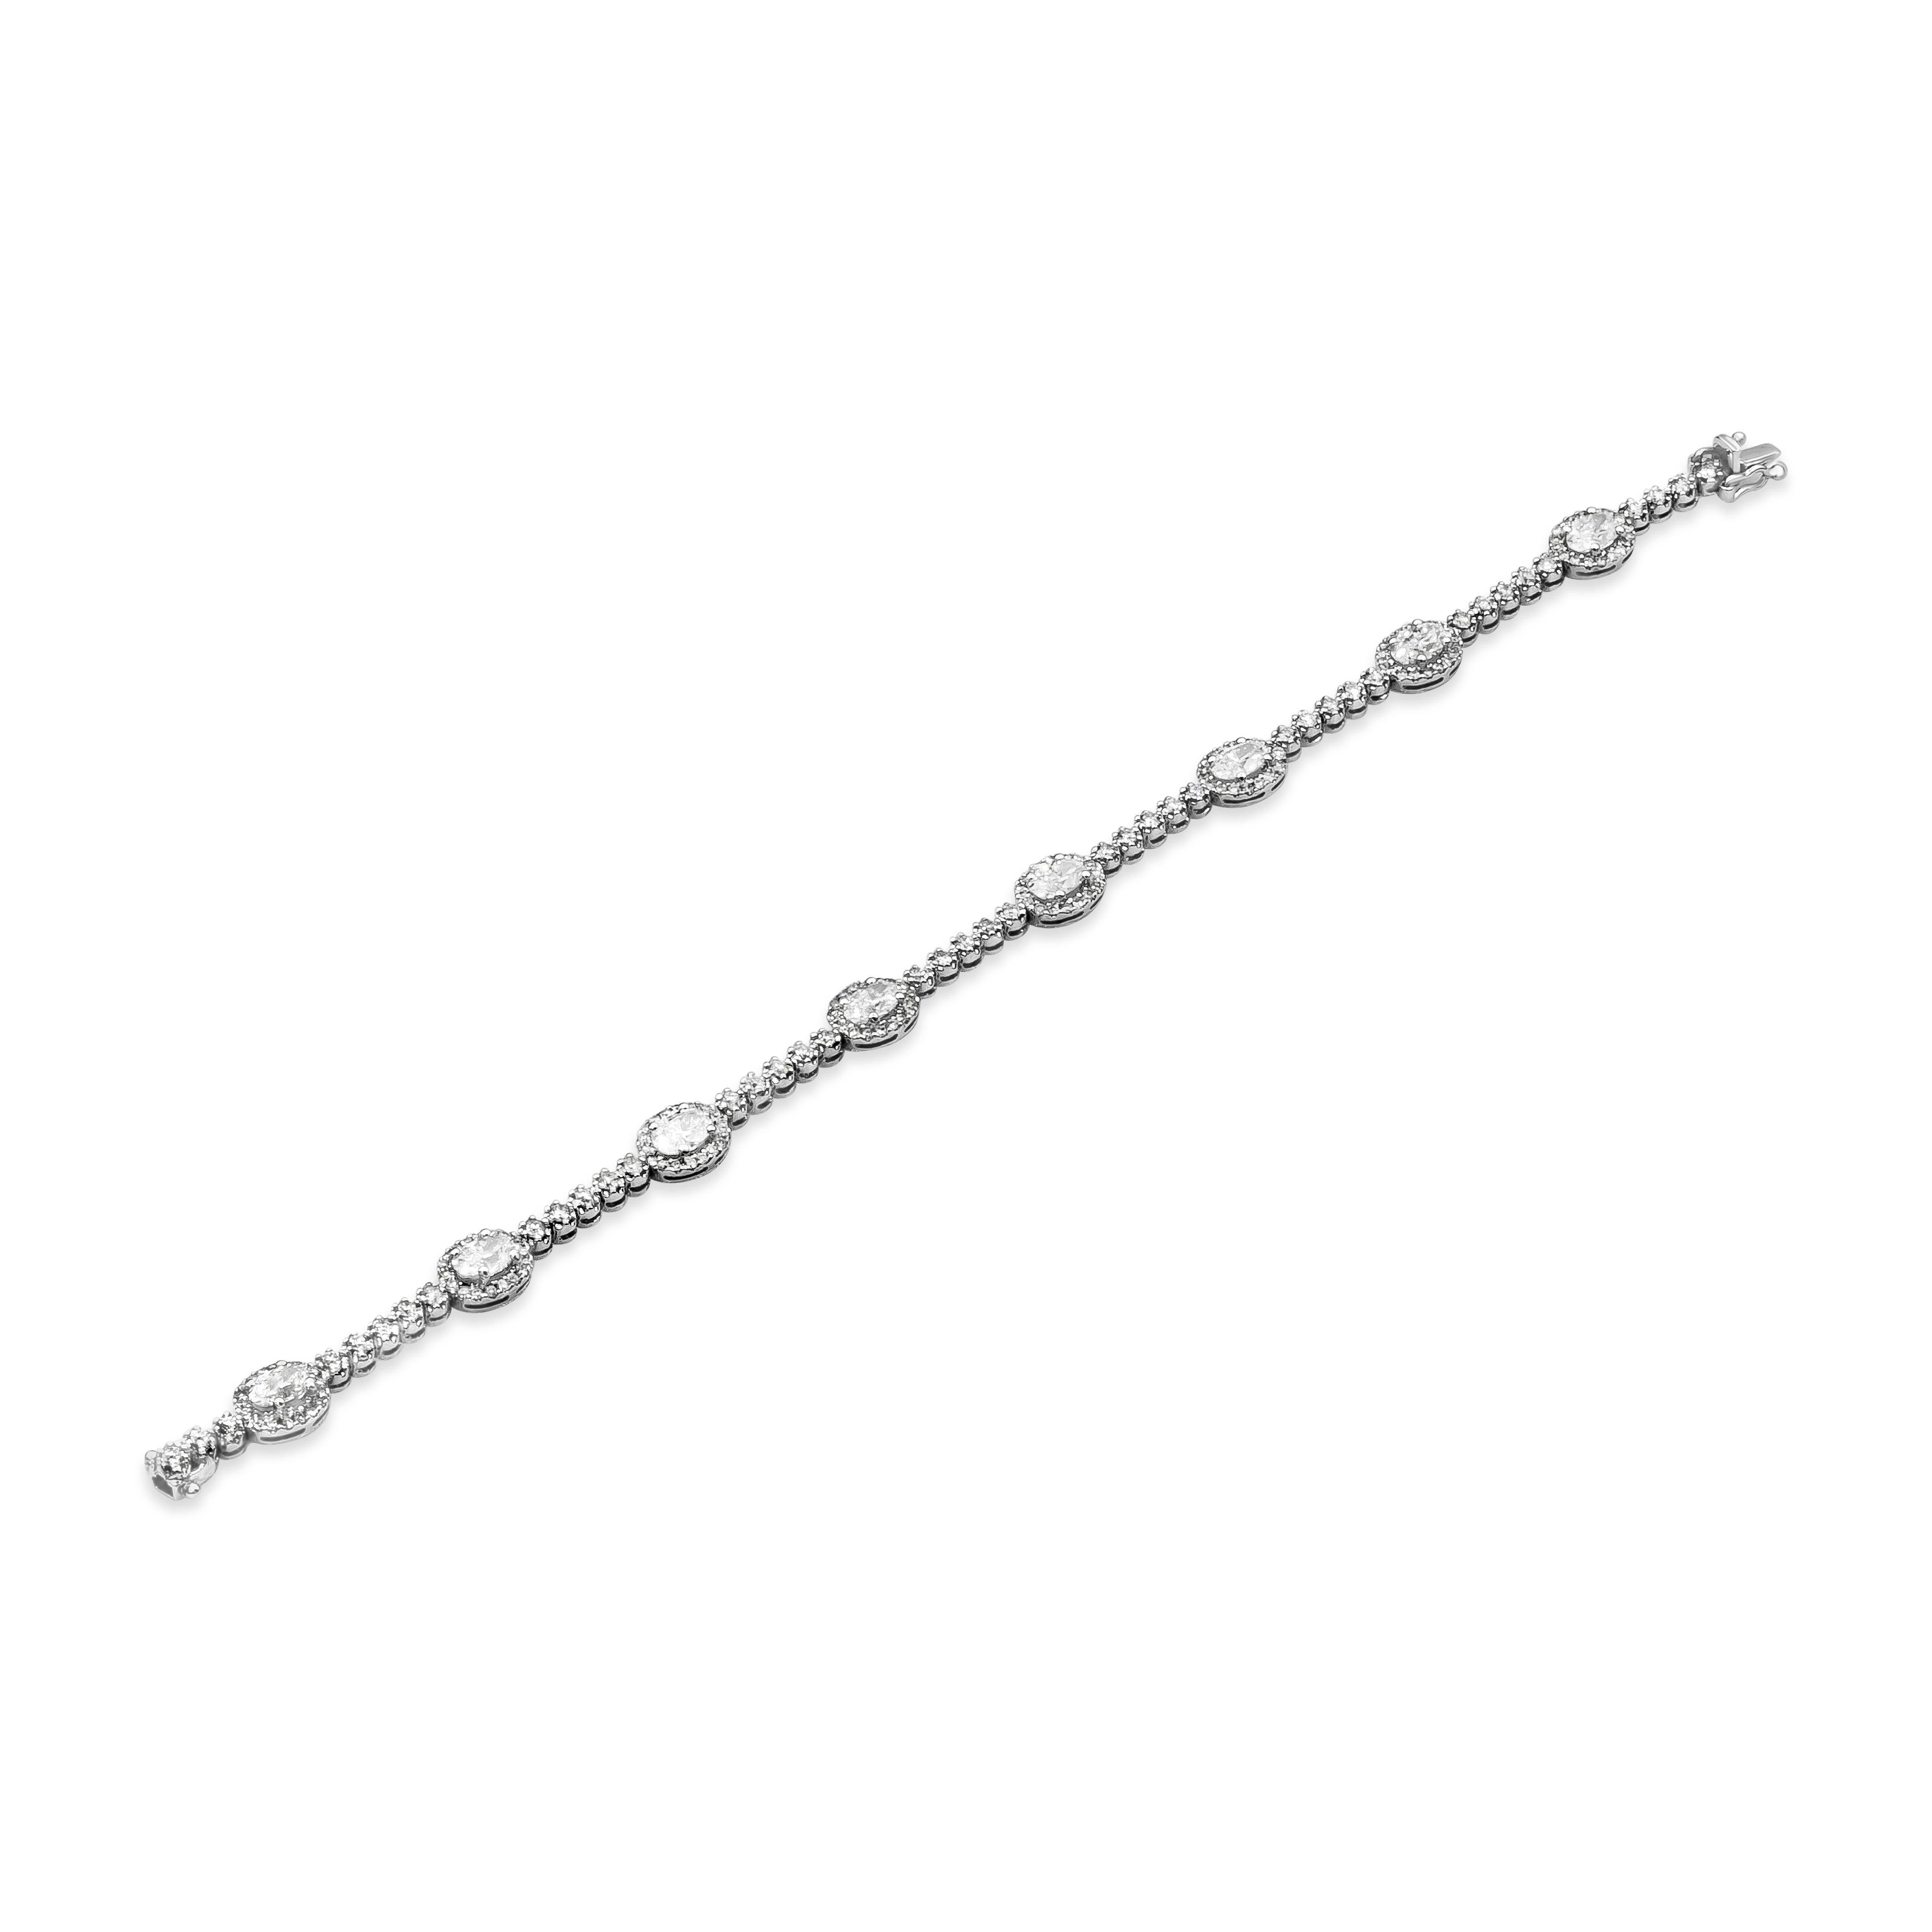 Ein klassisches Diamant-Tennisarmband im Halo-Stil mit oval geschliffenen Diamanten von insgesamt 2,46 Karat, umgeben von einer Reihe runder Brillanten, getrennt durch fünf runde Diamanten. Das Gewicht der akzentuierenden runden Diamanten beträgt